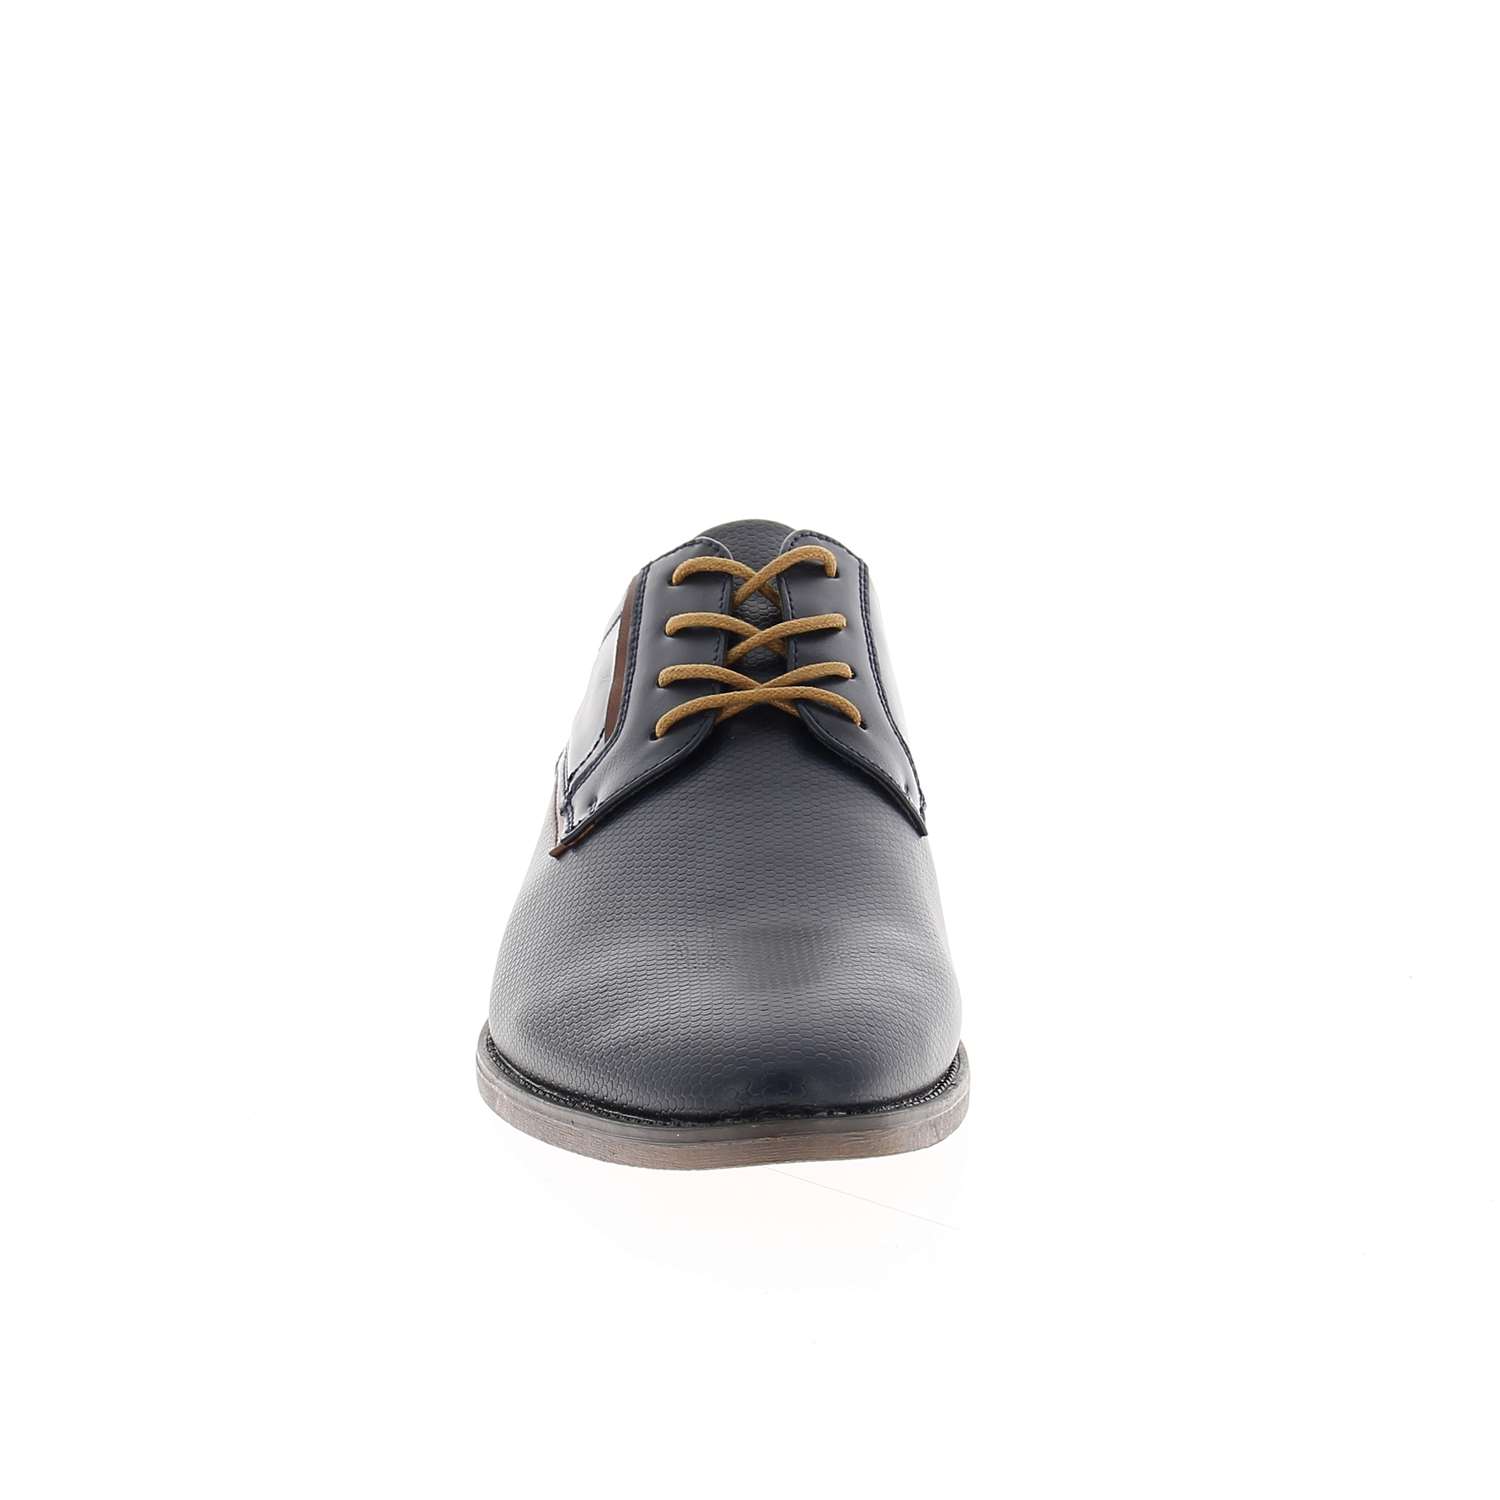 03 - KERBOL - XAPI - Chaussures à lacets - Textile